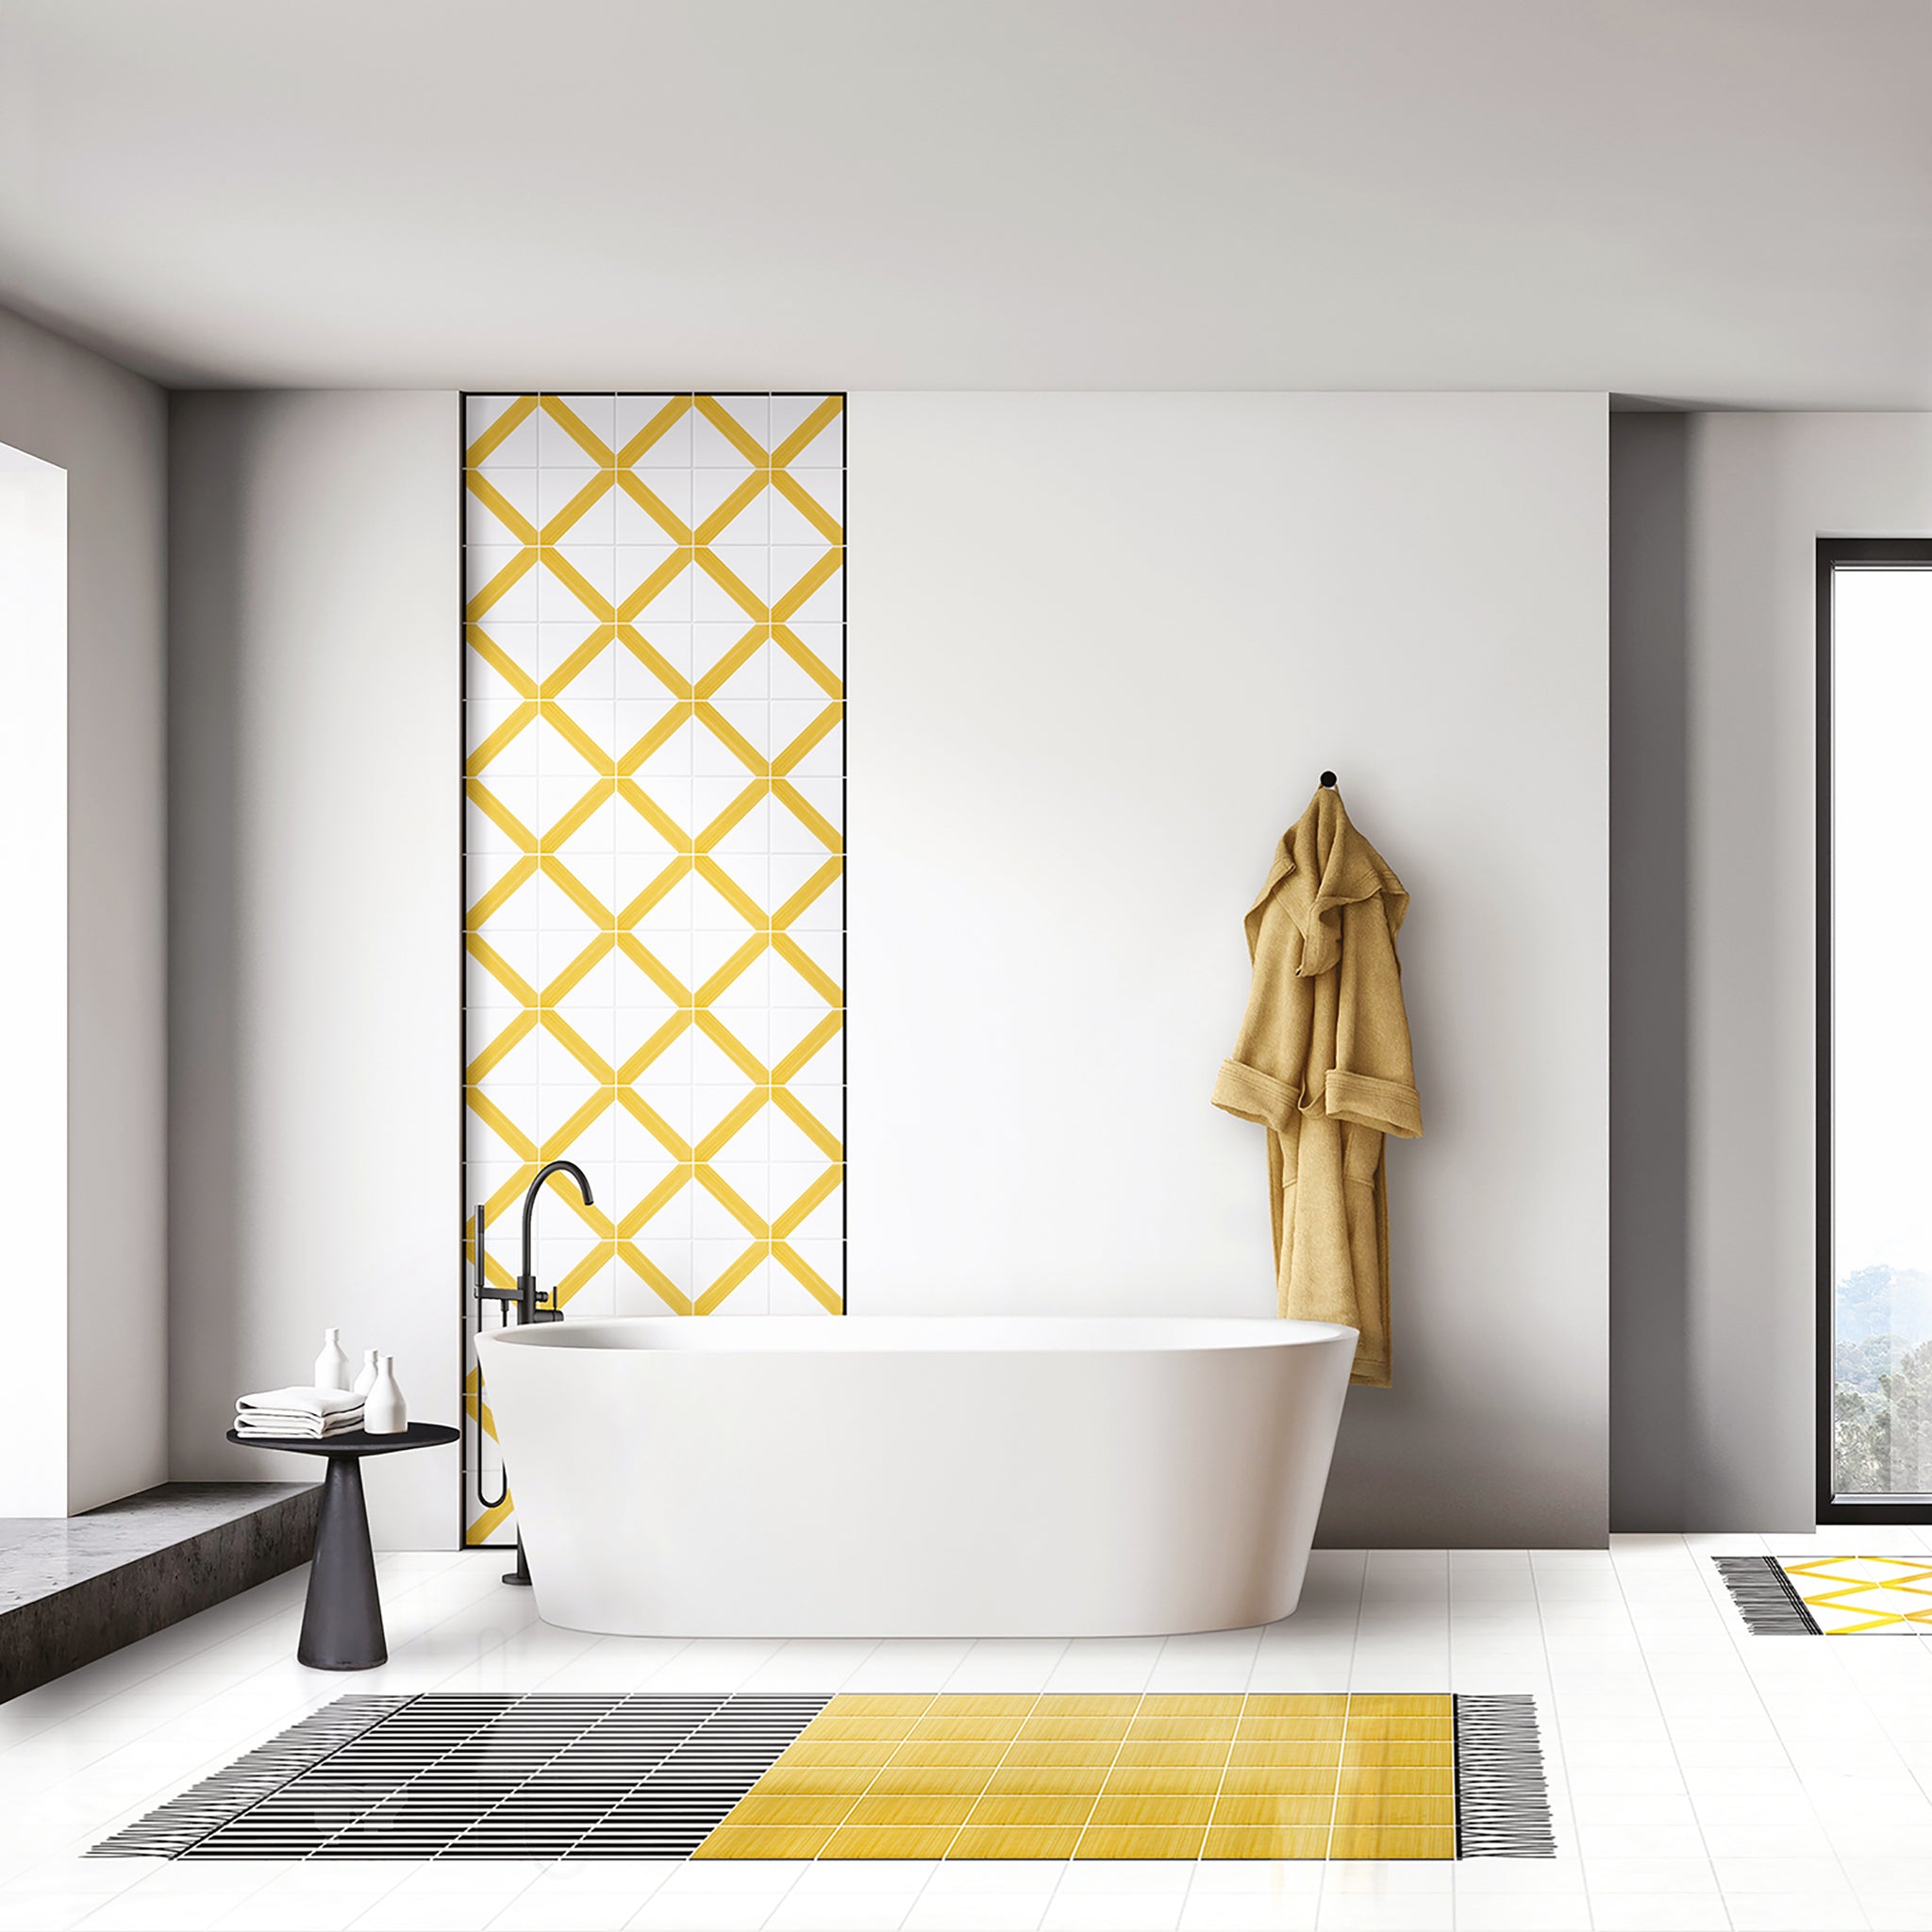 Carpet Total Yellow Ceramic Composition by Giuliano Andrea dell’Uva 120 X 80 with black border - Alternative view 1